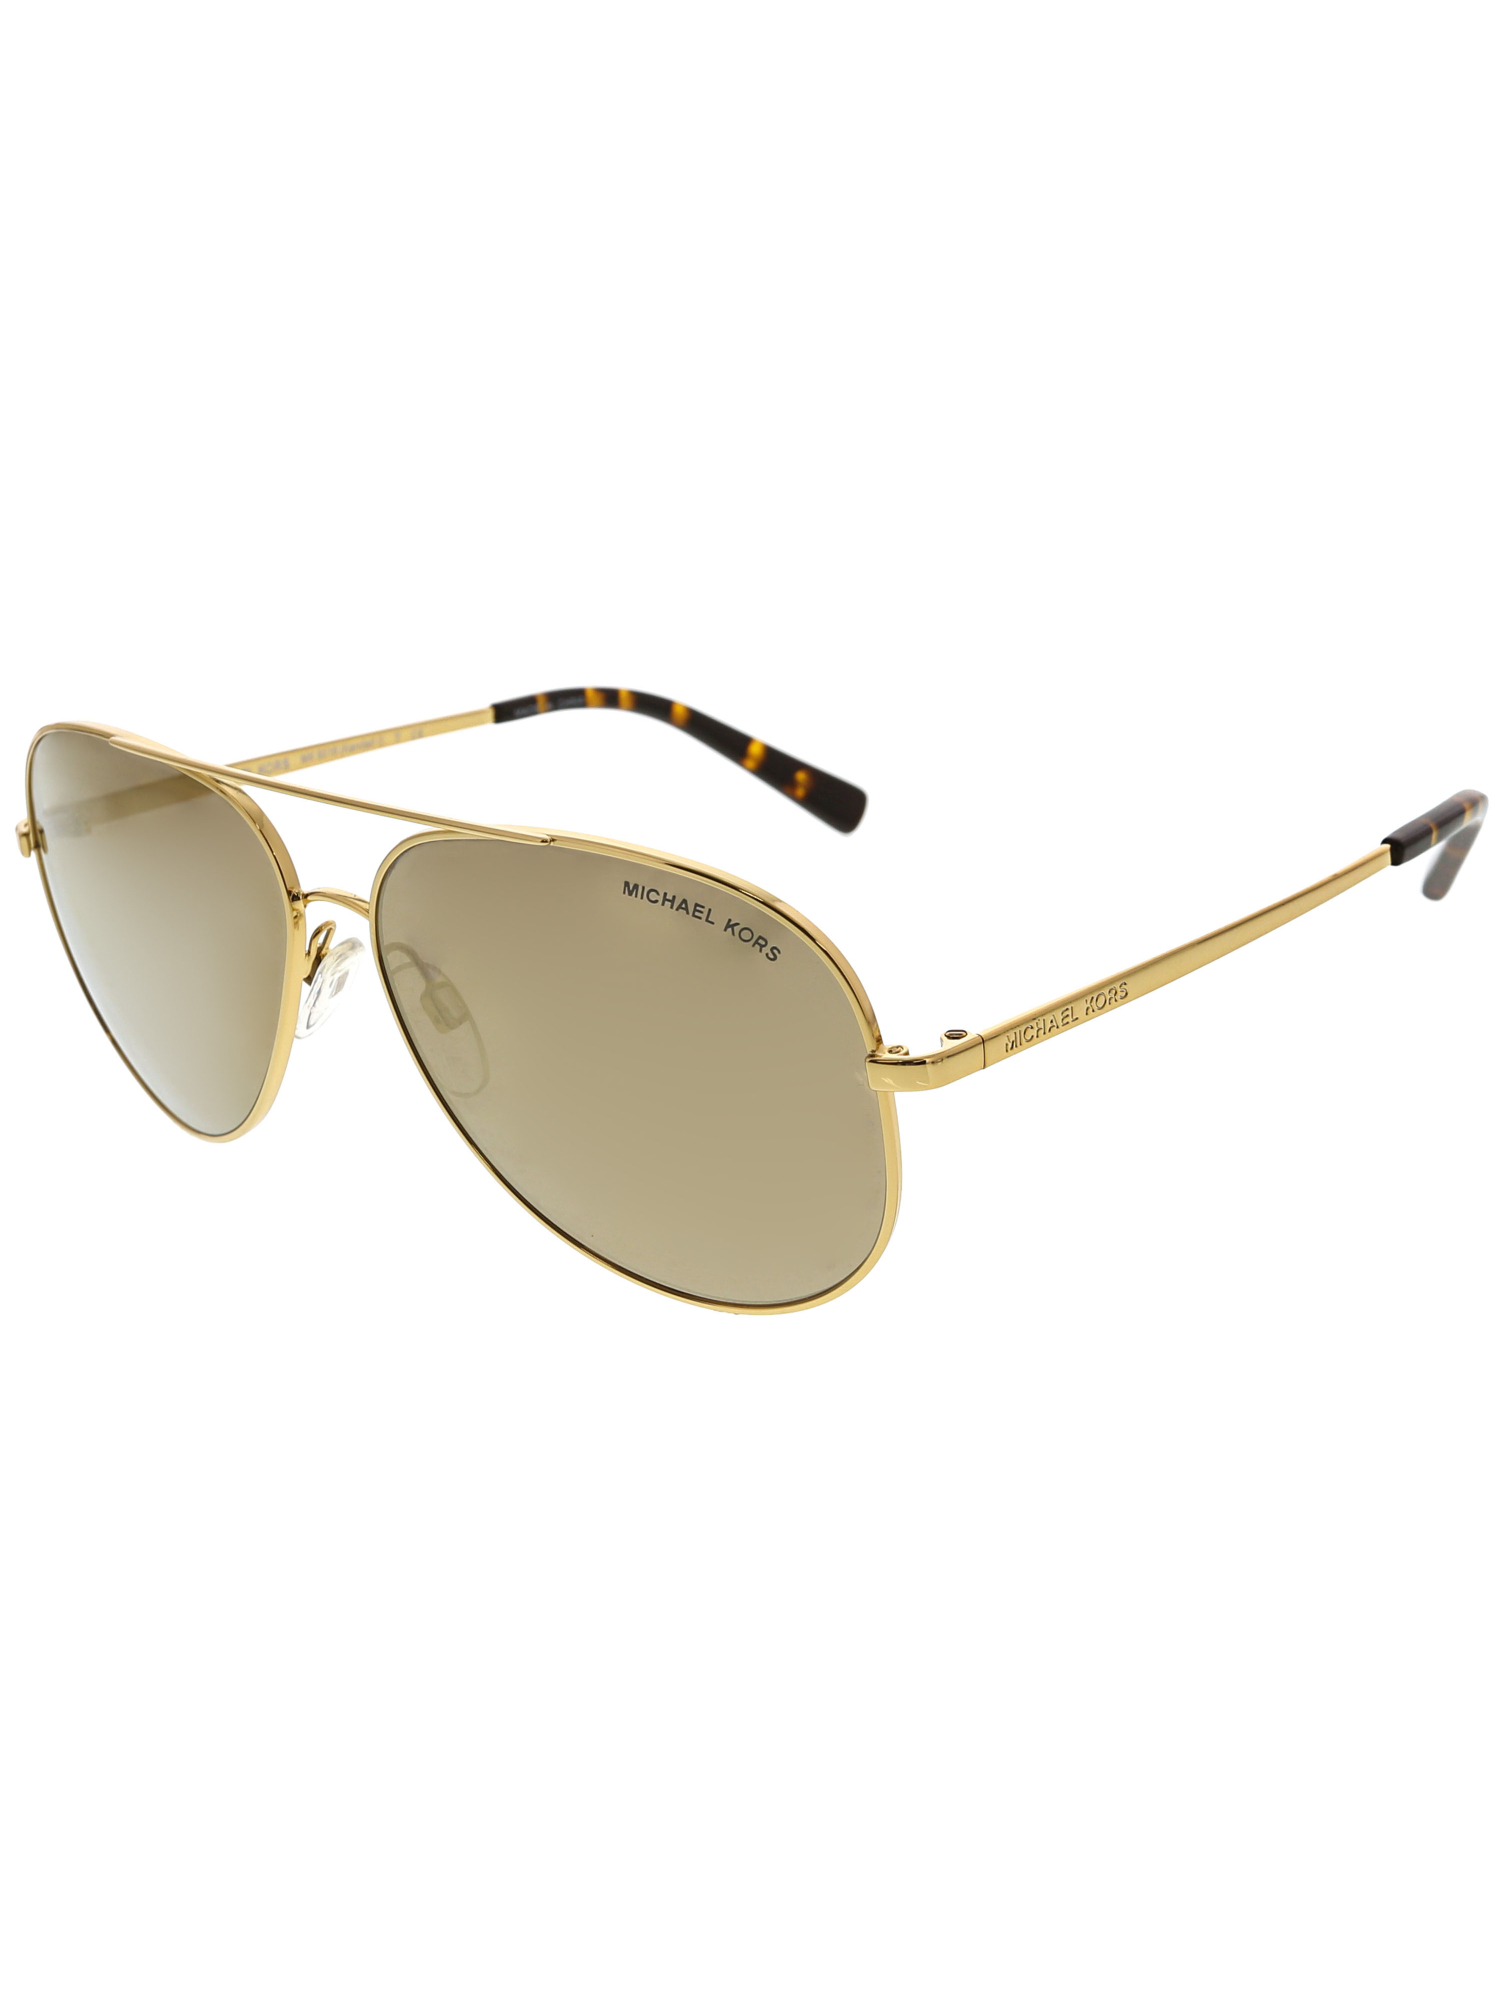 Women's Chelsea MK5004-1017R1-59 Rose Gold Aviator Sunglasses - image 1 of 3